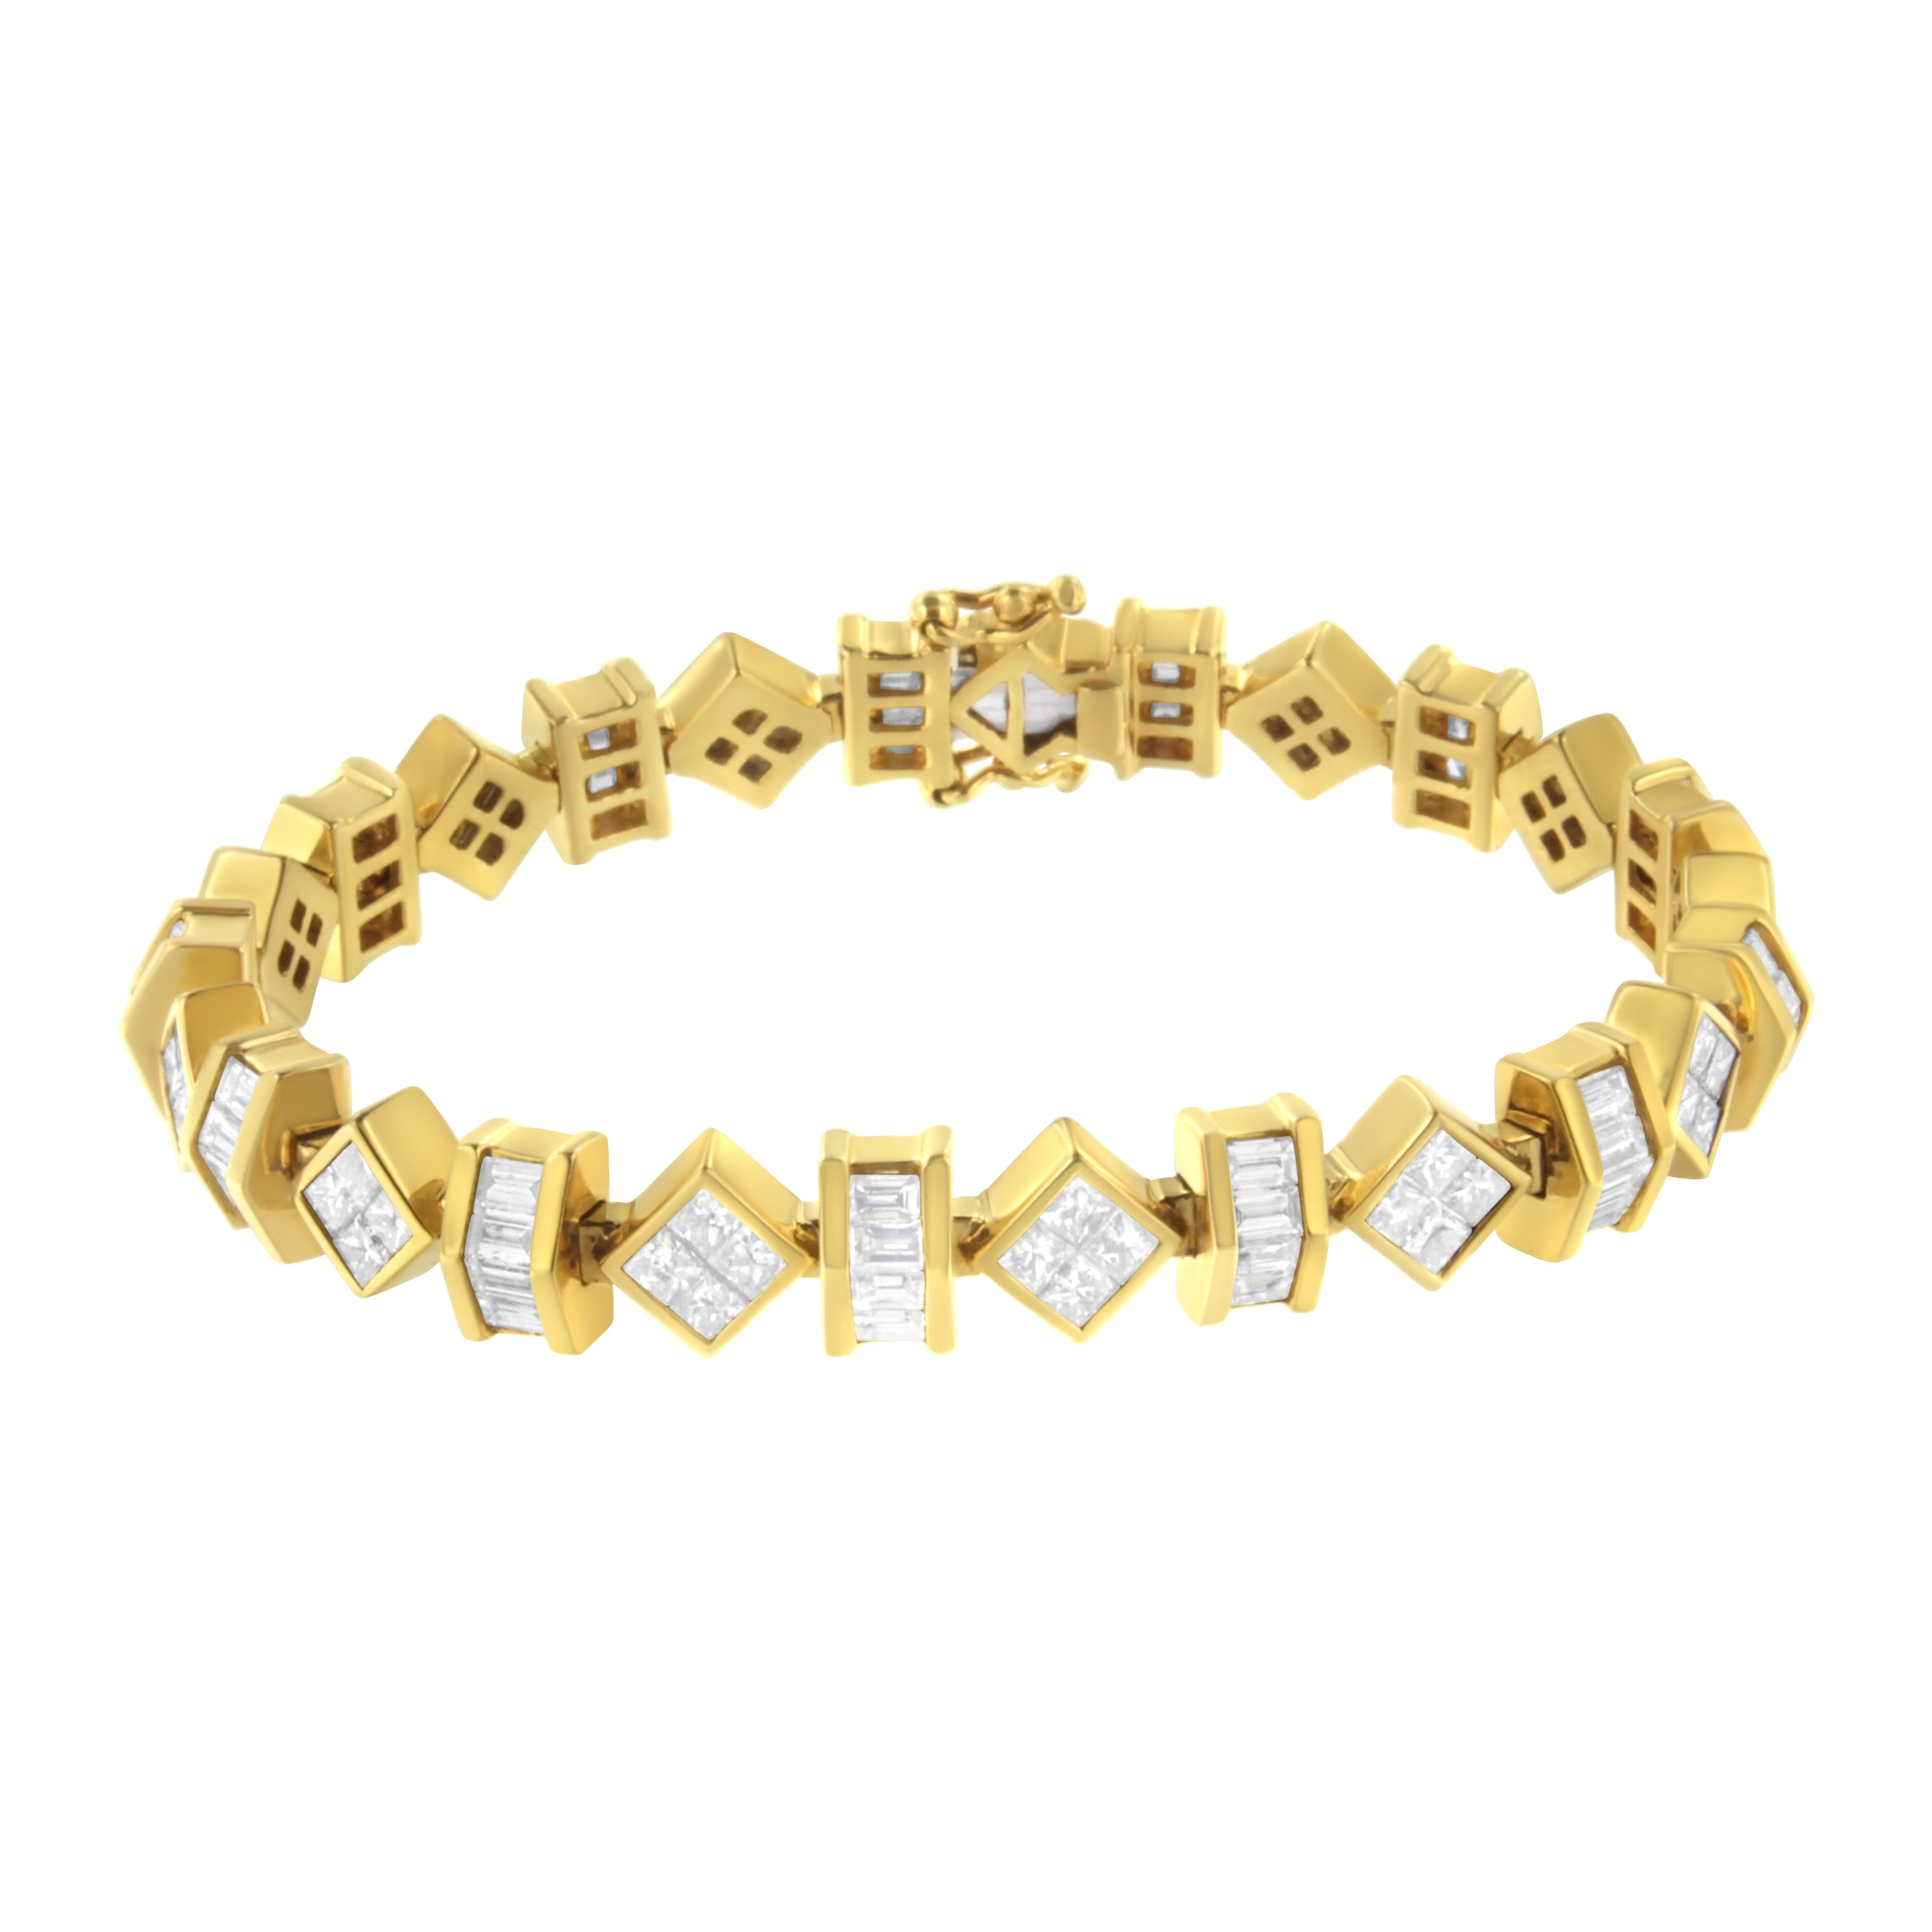 Verleihen Sie jeder Gelegenheit Stil und Glamour mit diesem glänzenden Schmuckstück. Dieses atemberaubende und leichte Diamant-Tennisarmband ist aus reichem 14-karätigem Gelbgold gefertigt. Dieses auf Hochglanz polierte, neomoderne Armband hat ein